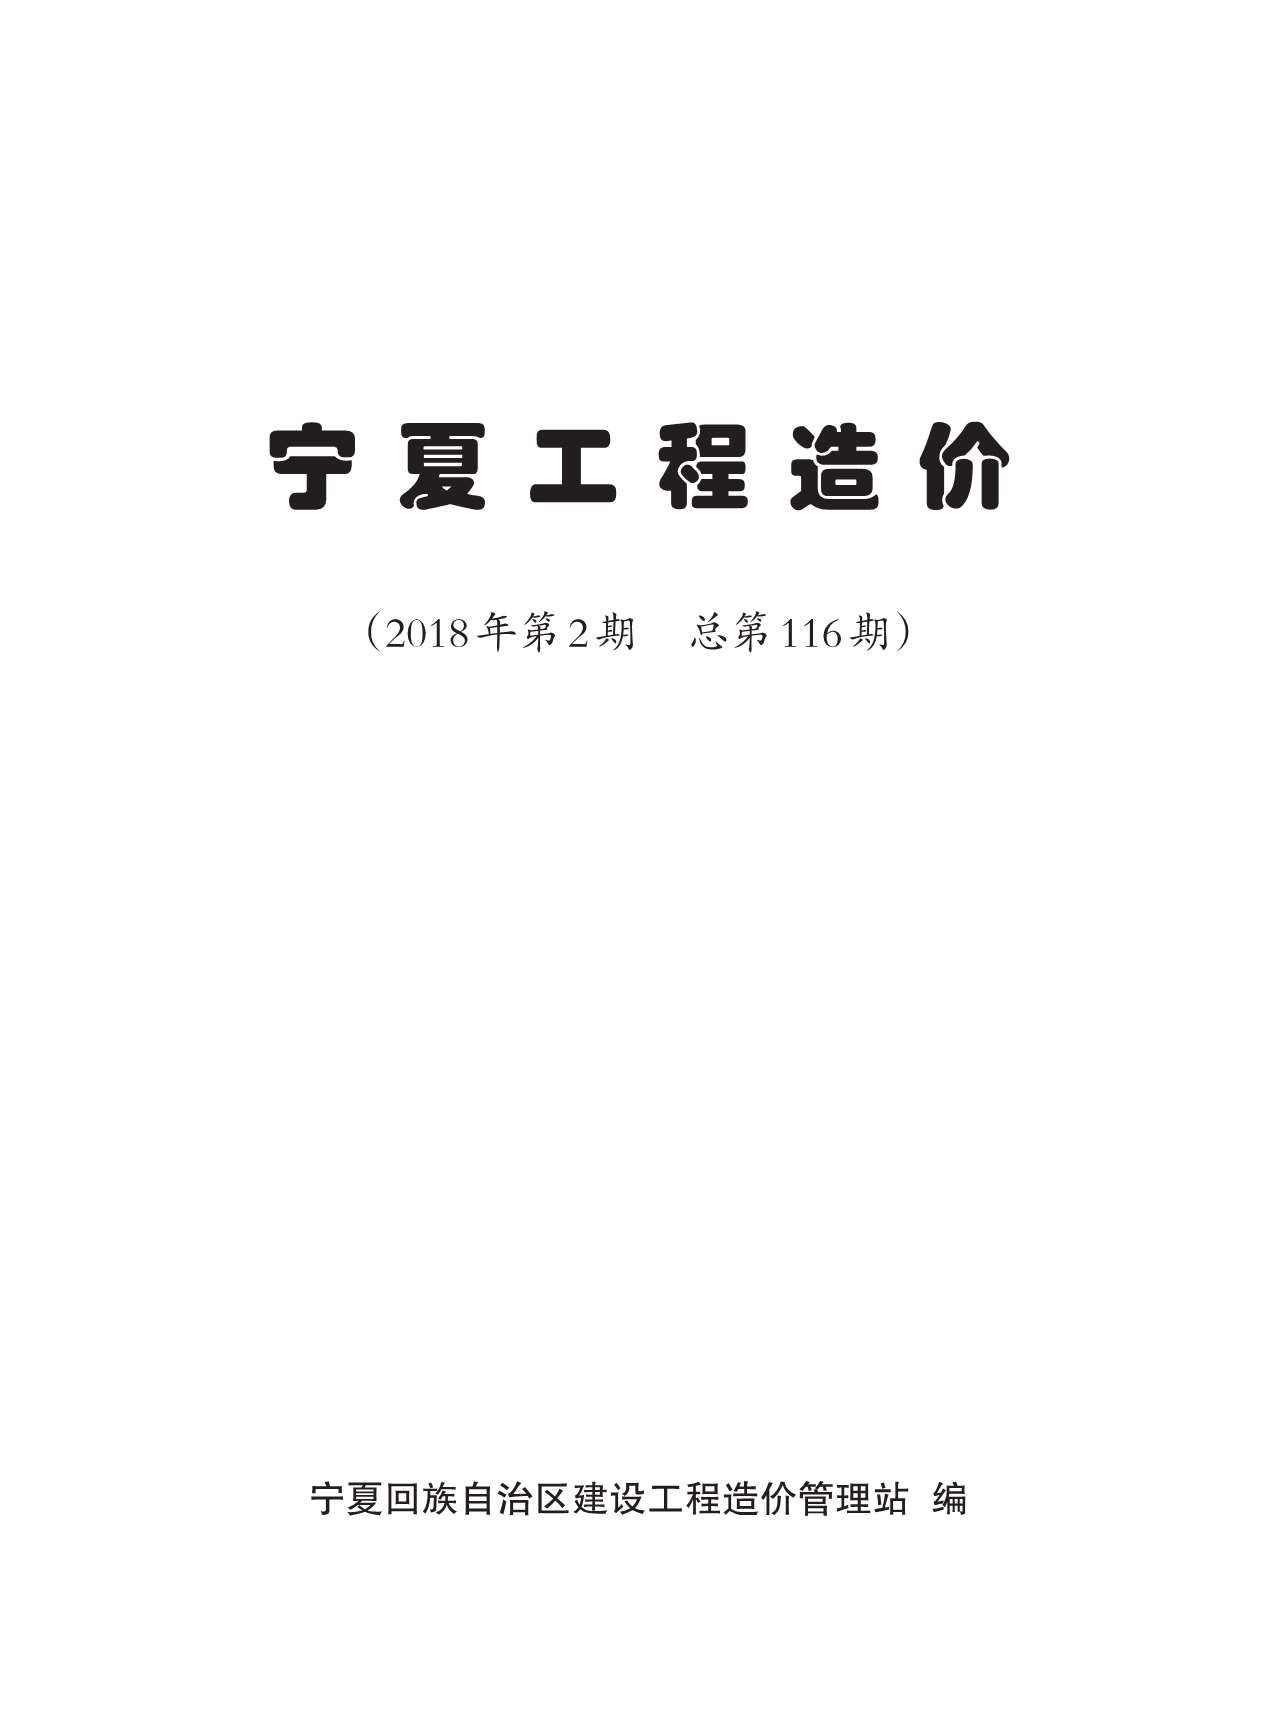 宁夏自治区2018年2月工程信息价_宁夏自治区信息价期刊PDF扫描件电子版